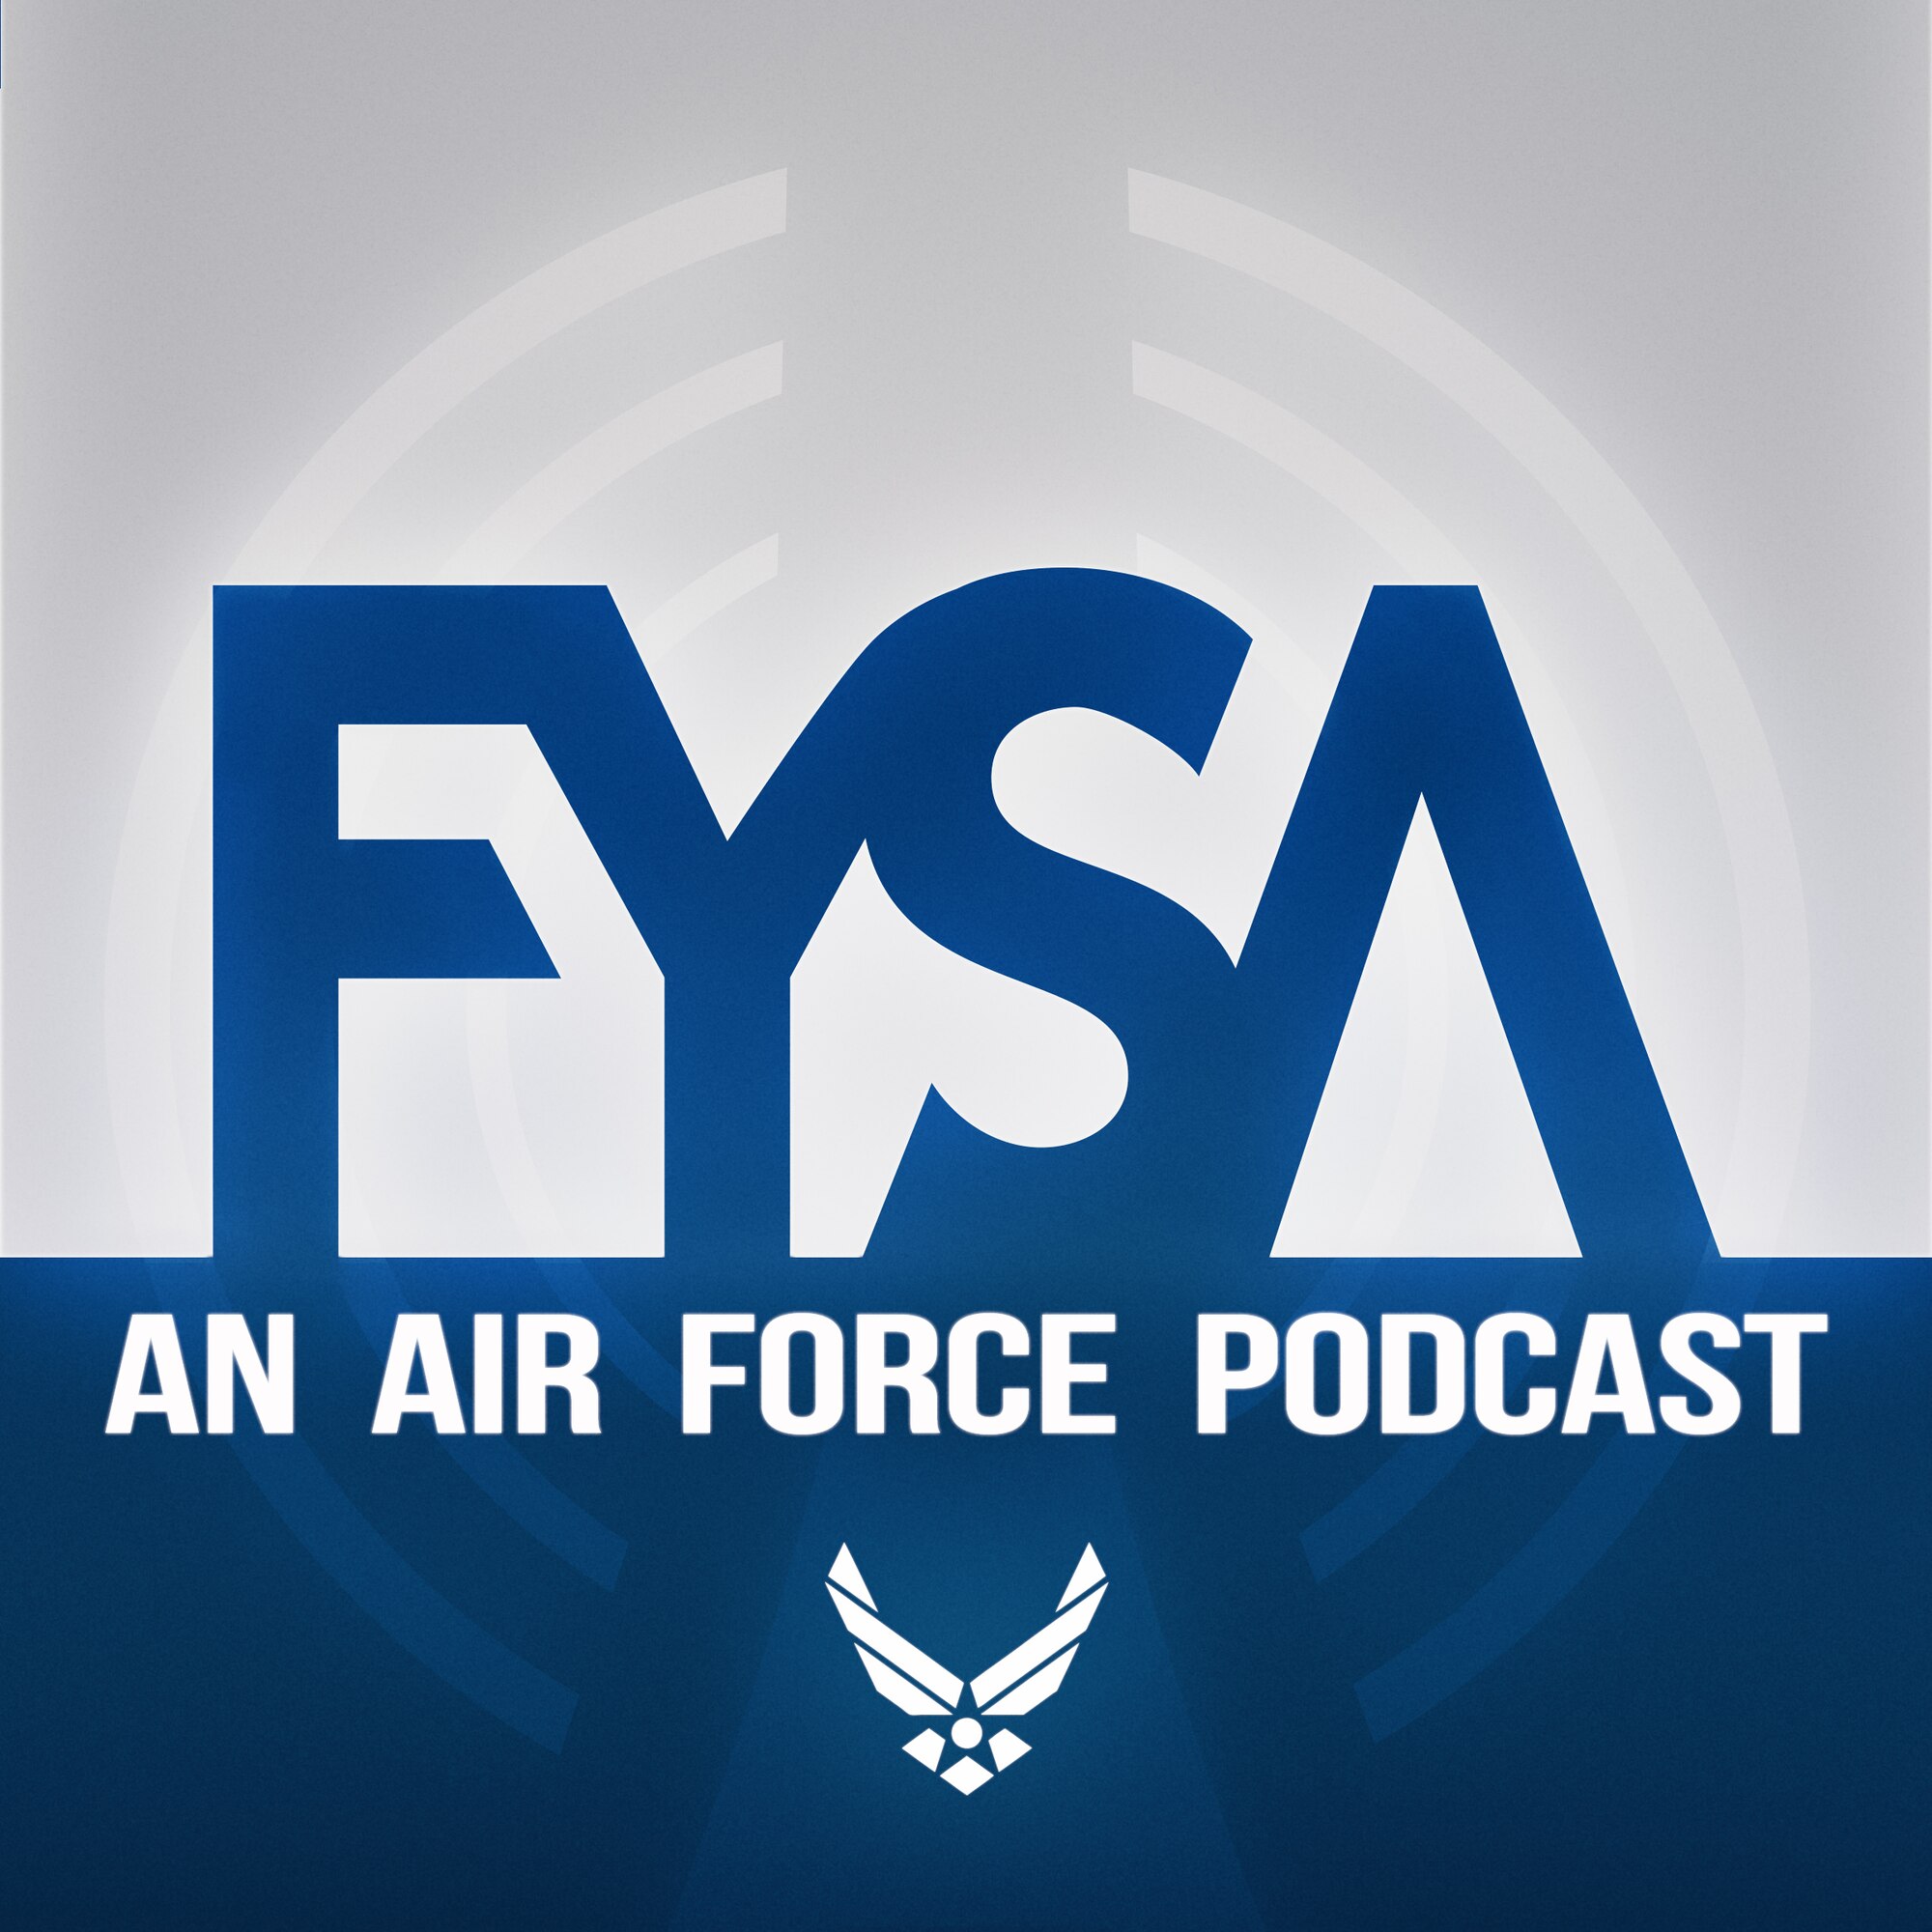 FYSA: An Air Force Podcast